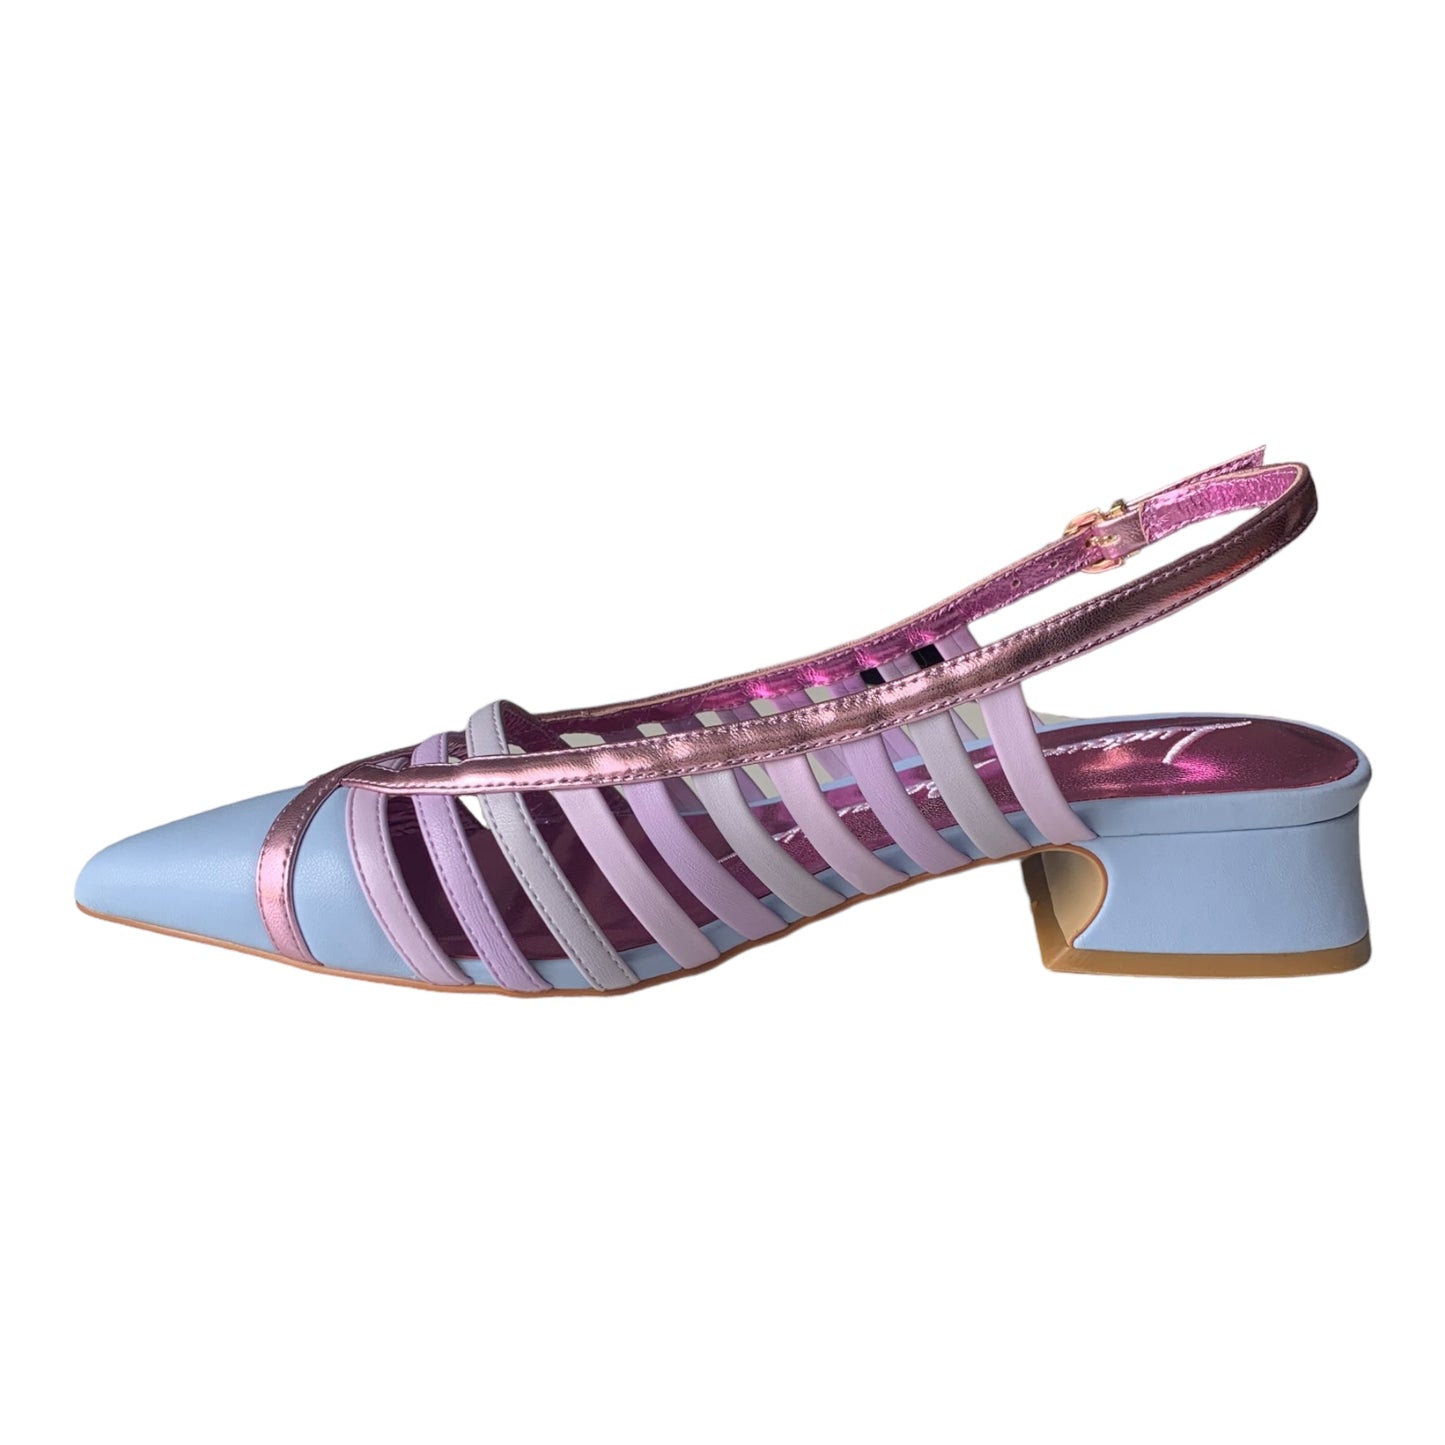 Scarpe Luciano Barachini - Chanel in pelle multicolore lilla - NL307N